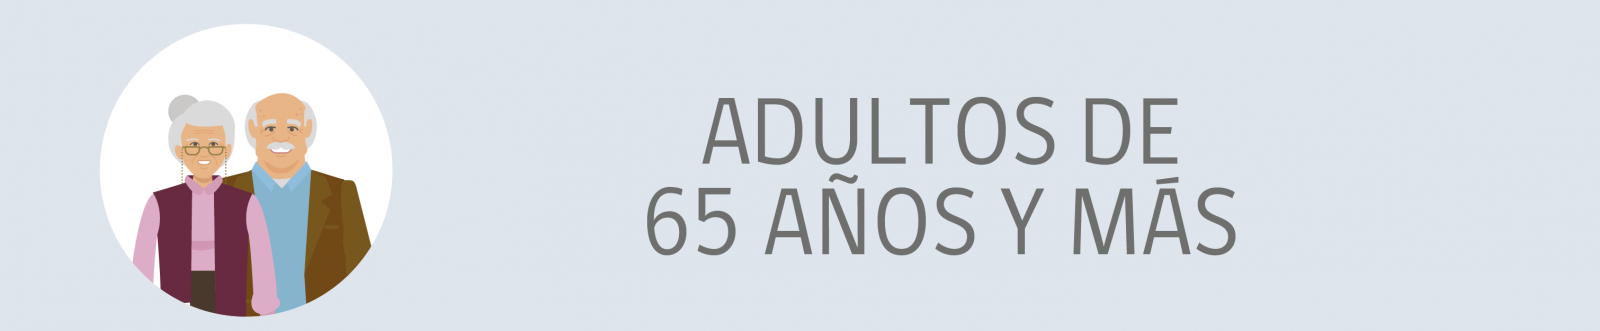 adultos de 65 años y mas